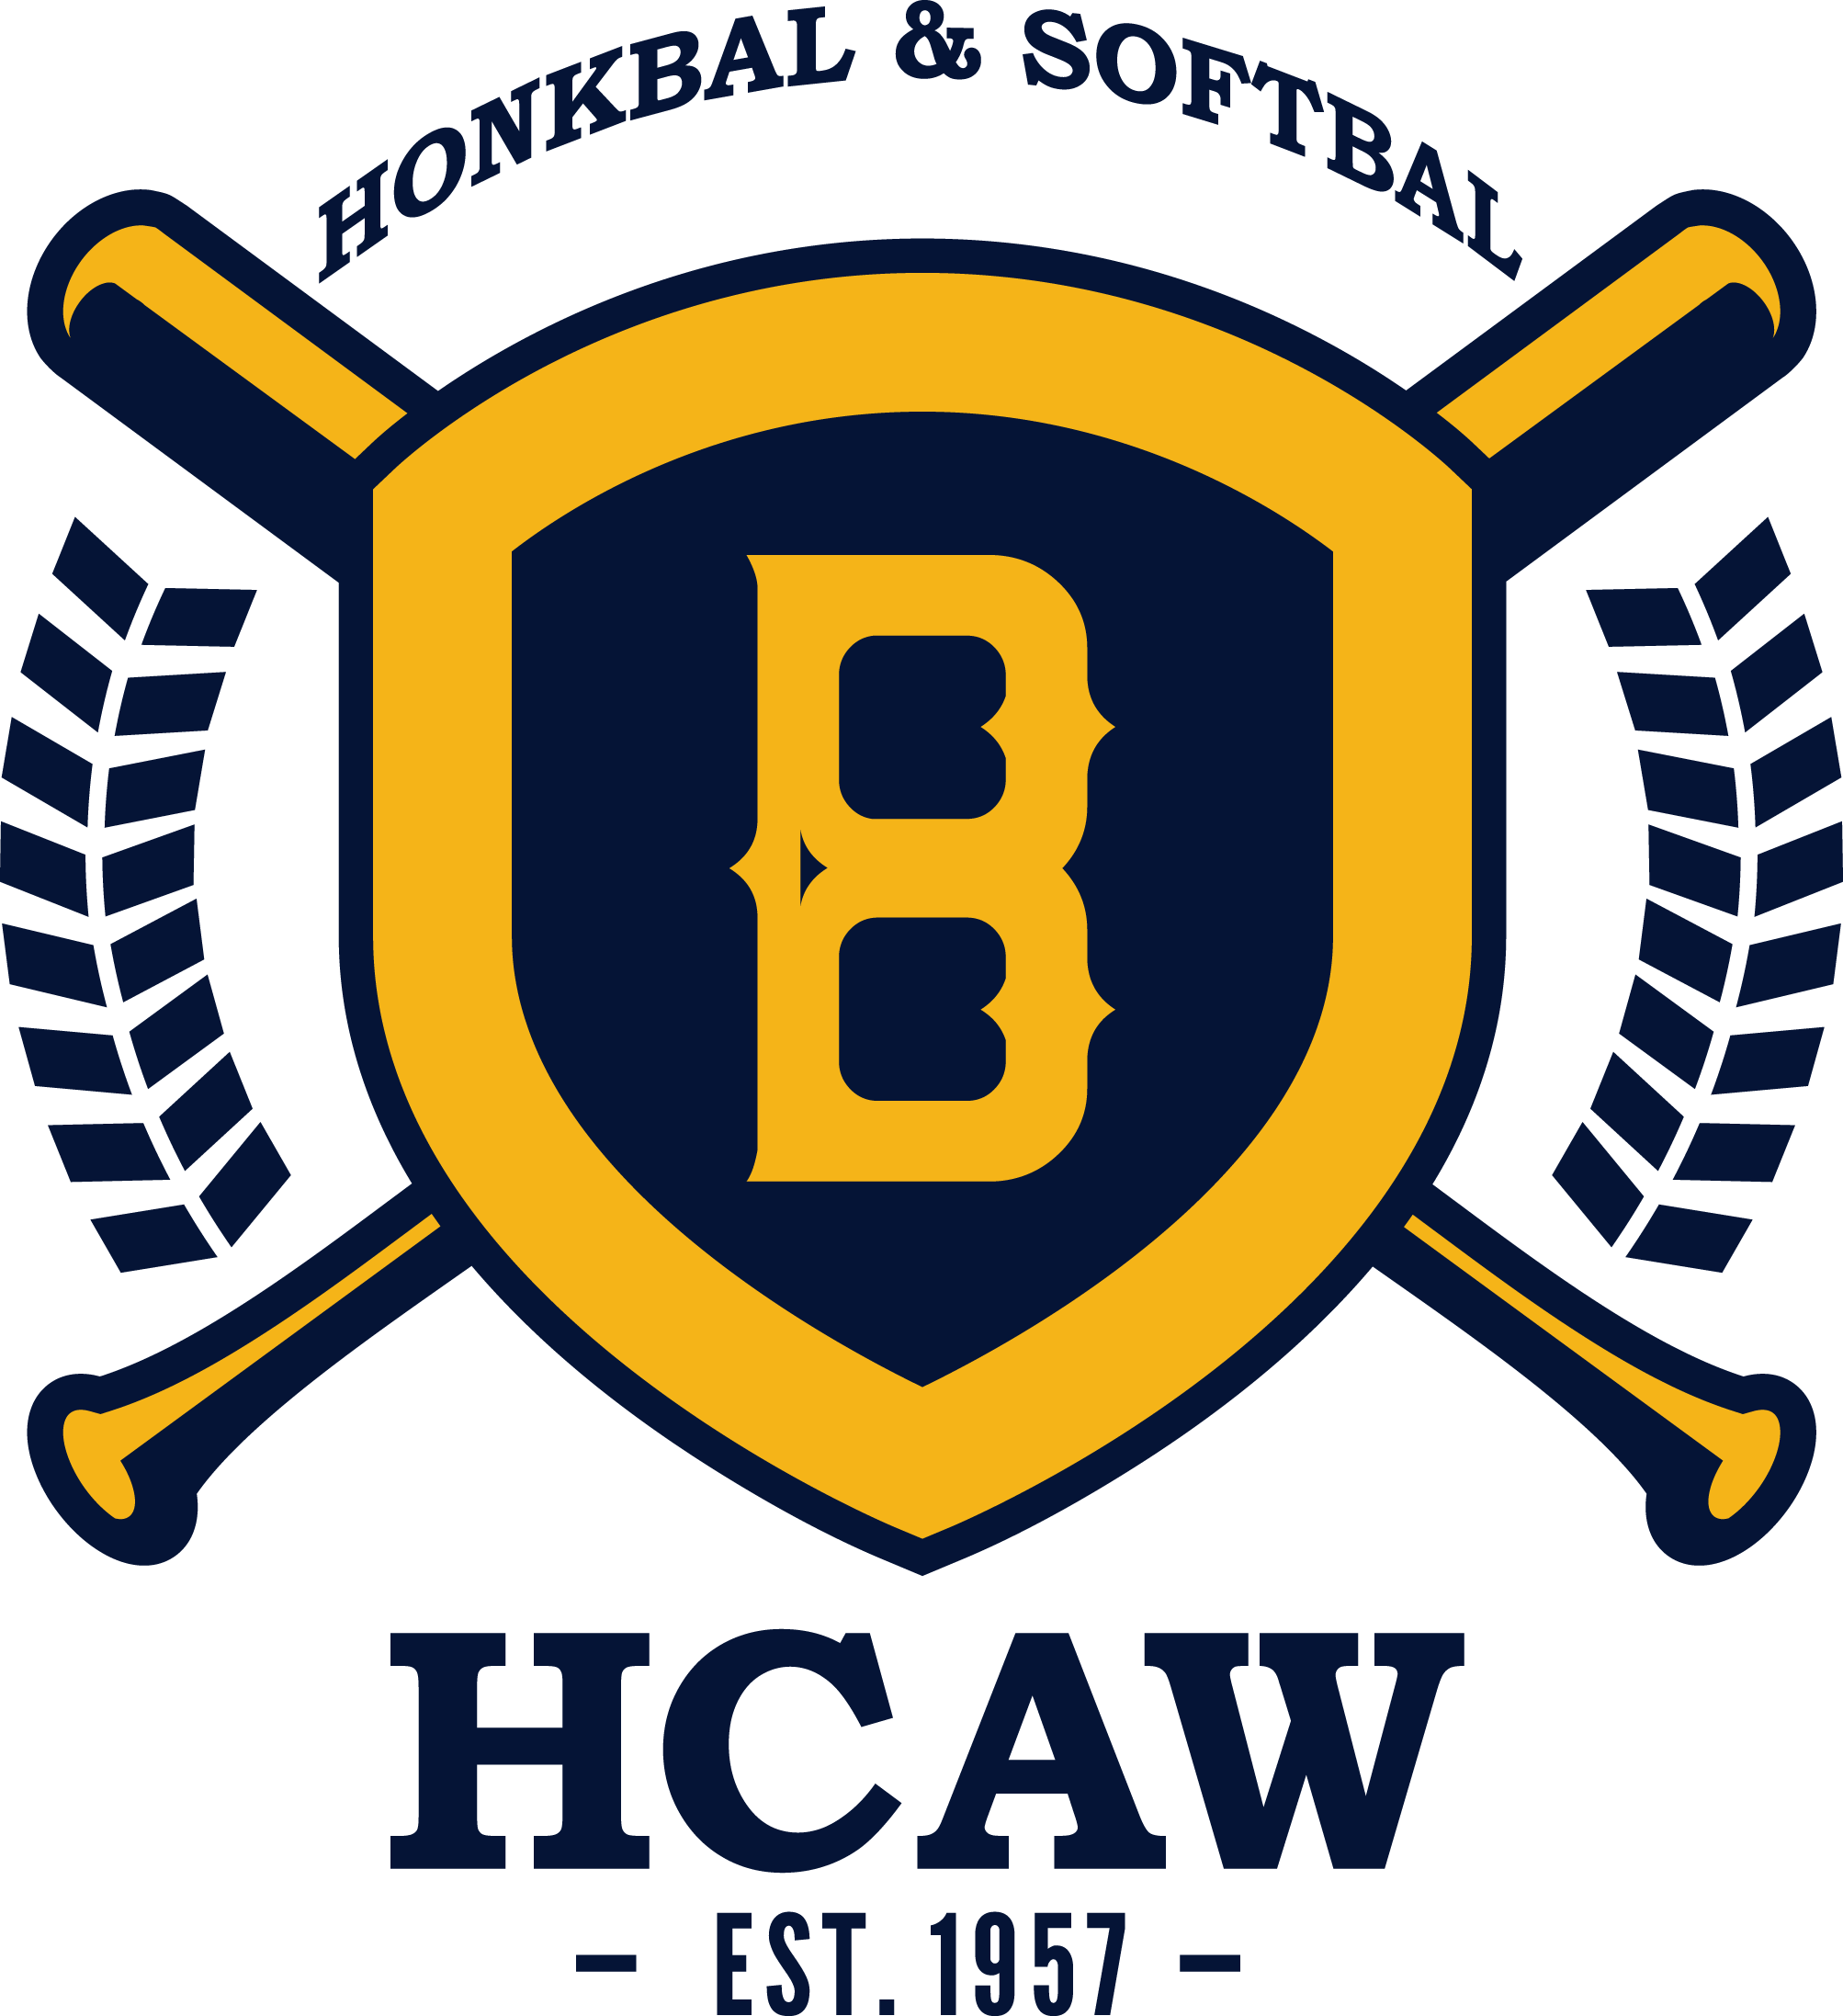 Logo HCAW